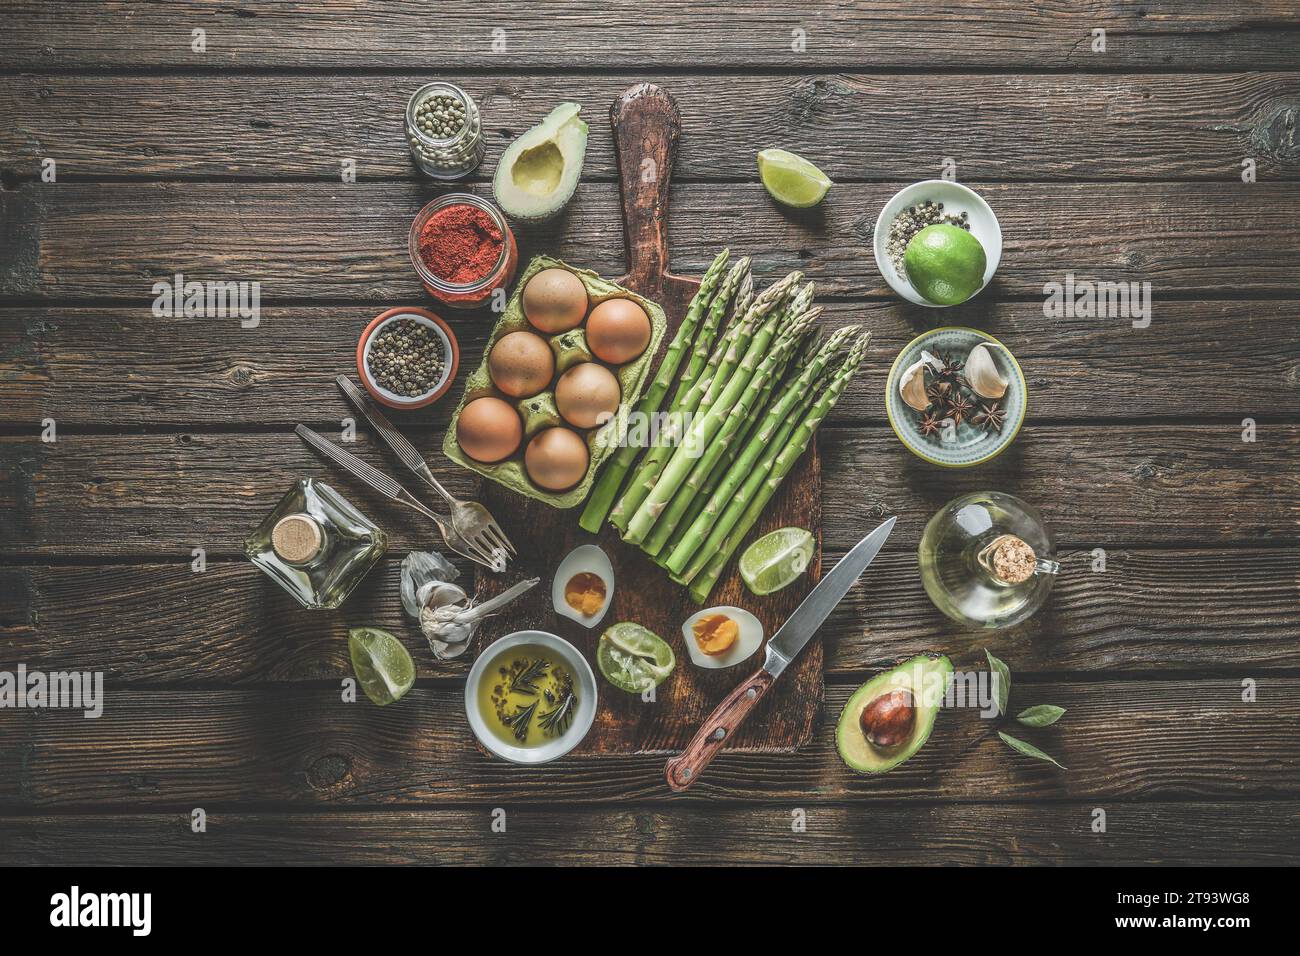 Vari ingredienti sani di cottura: Mazzo di asparagi verdi, uova, spezie, avocado, lime, olio d'oliva e utensili da cucina: forchette, coltelli e taglio b Foto Stock